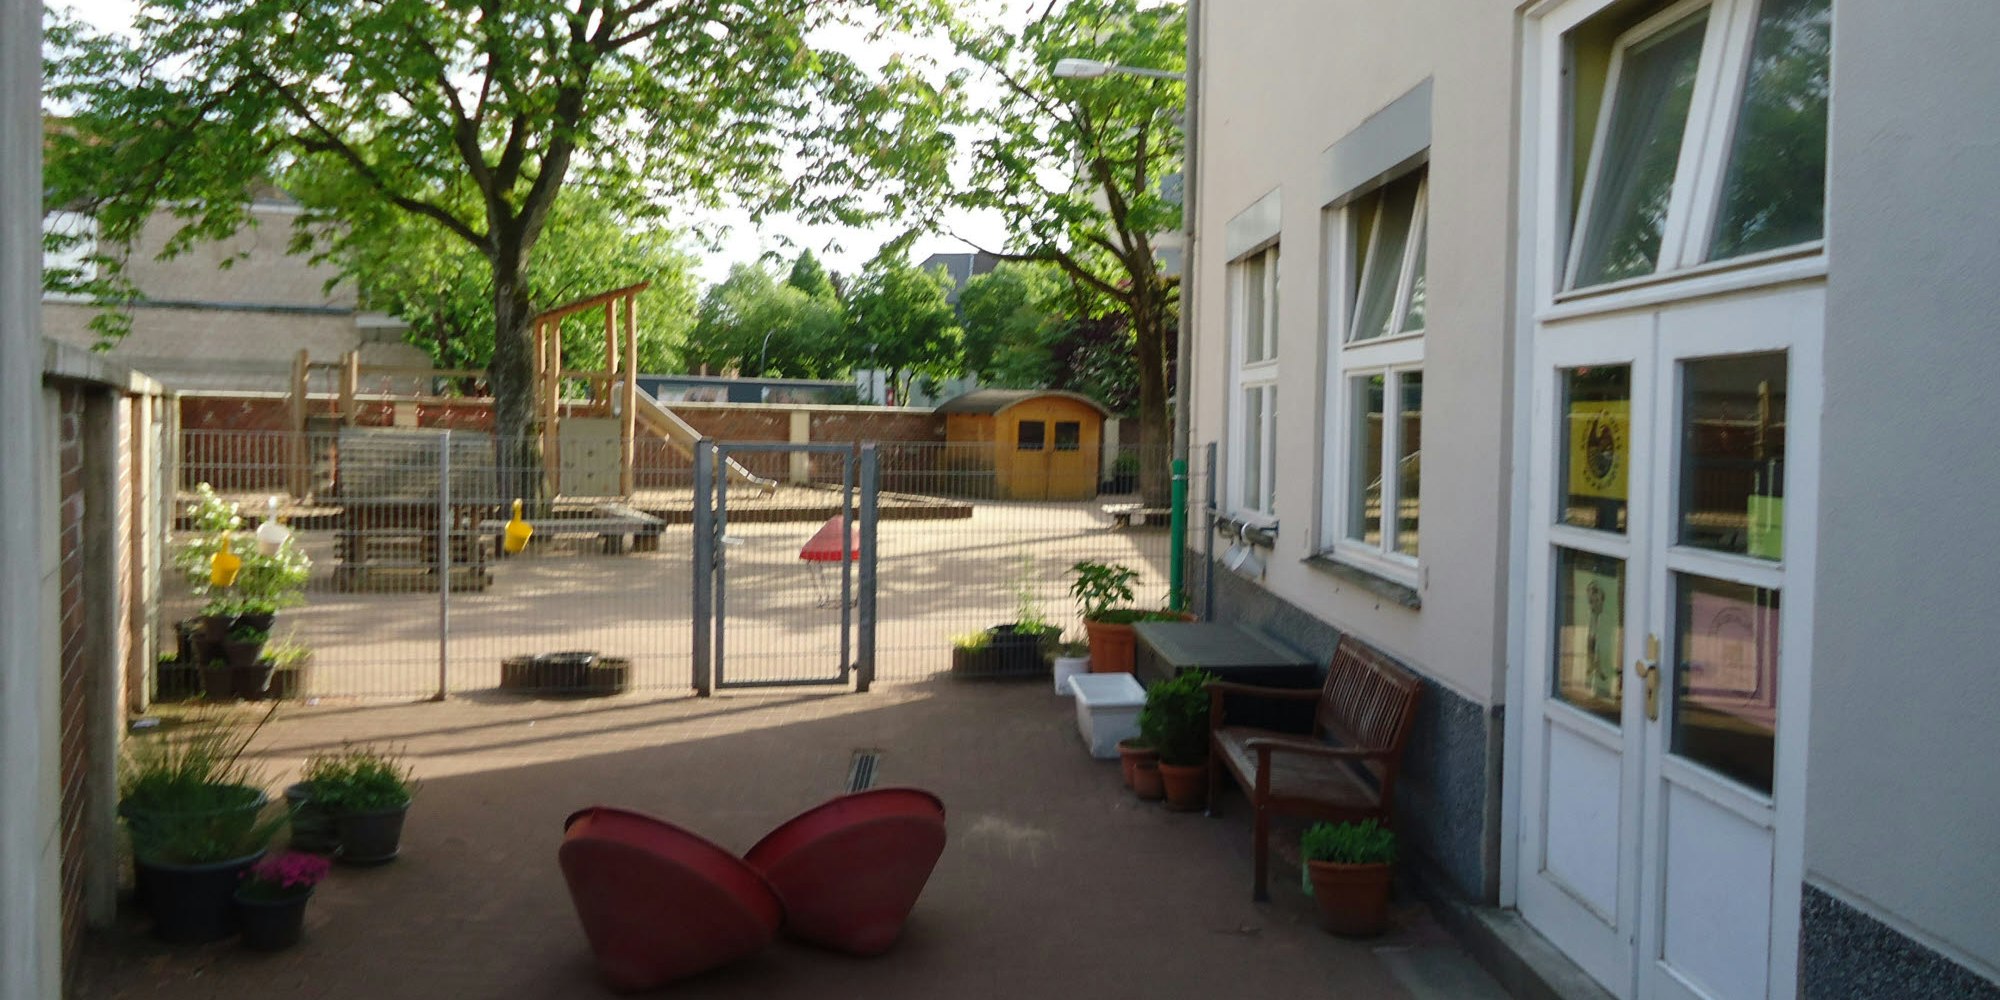 Blick auf das Offene Ganztagsgebäude mit kleinem Spielplatz der Montessori-Schule an der Garthestraße. Sie soll das Haus zeitweise räumen.